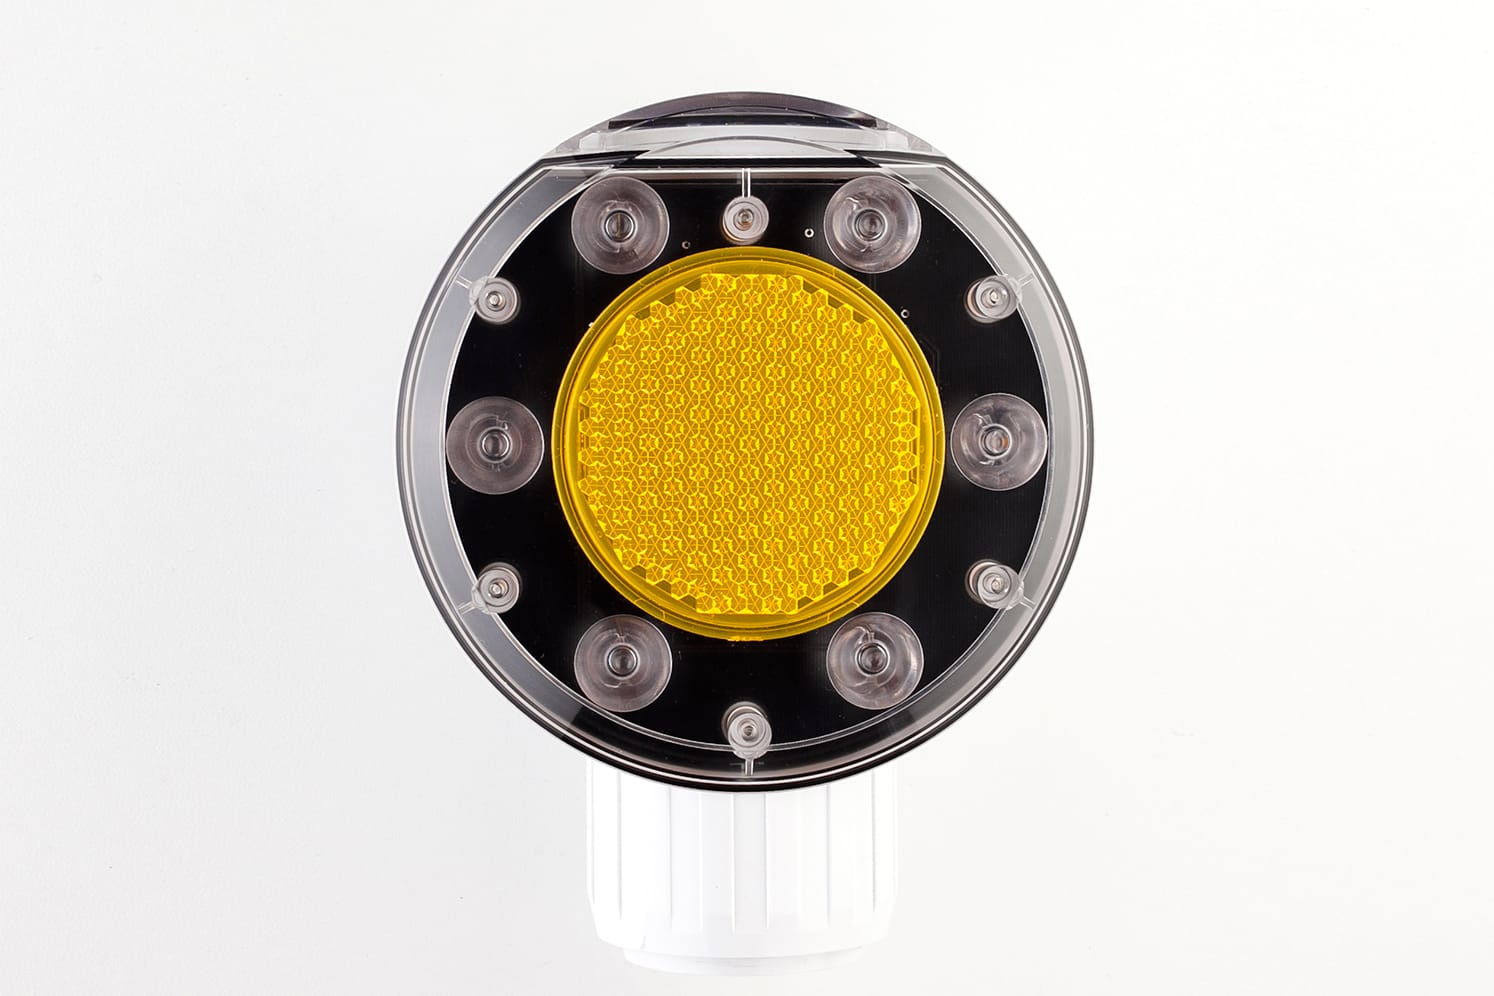 Feu solaire LED flash de signalisation routière : ECO-506